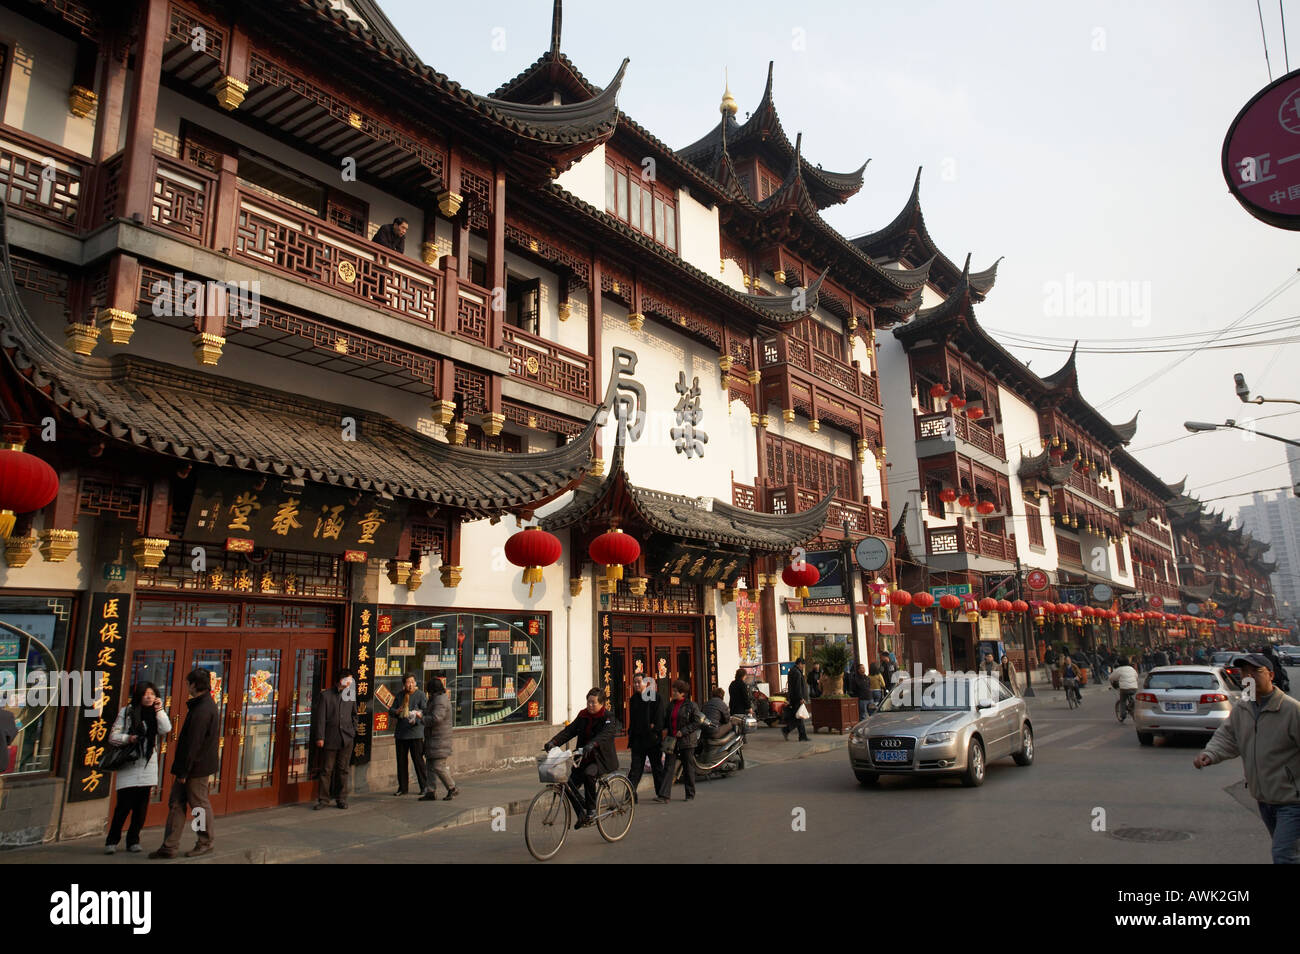 Yu Yuan Garten außen Altstadt in Puxi Bezirk in Shanghai China Asien Stadt Straßenszene Stockfoto